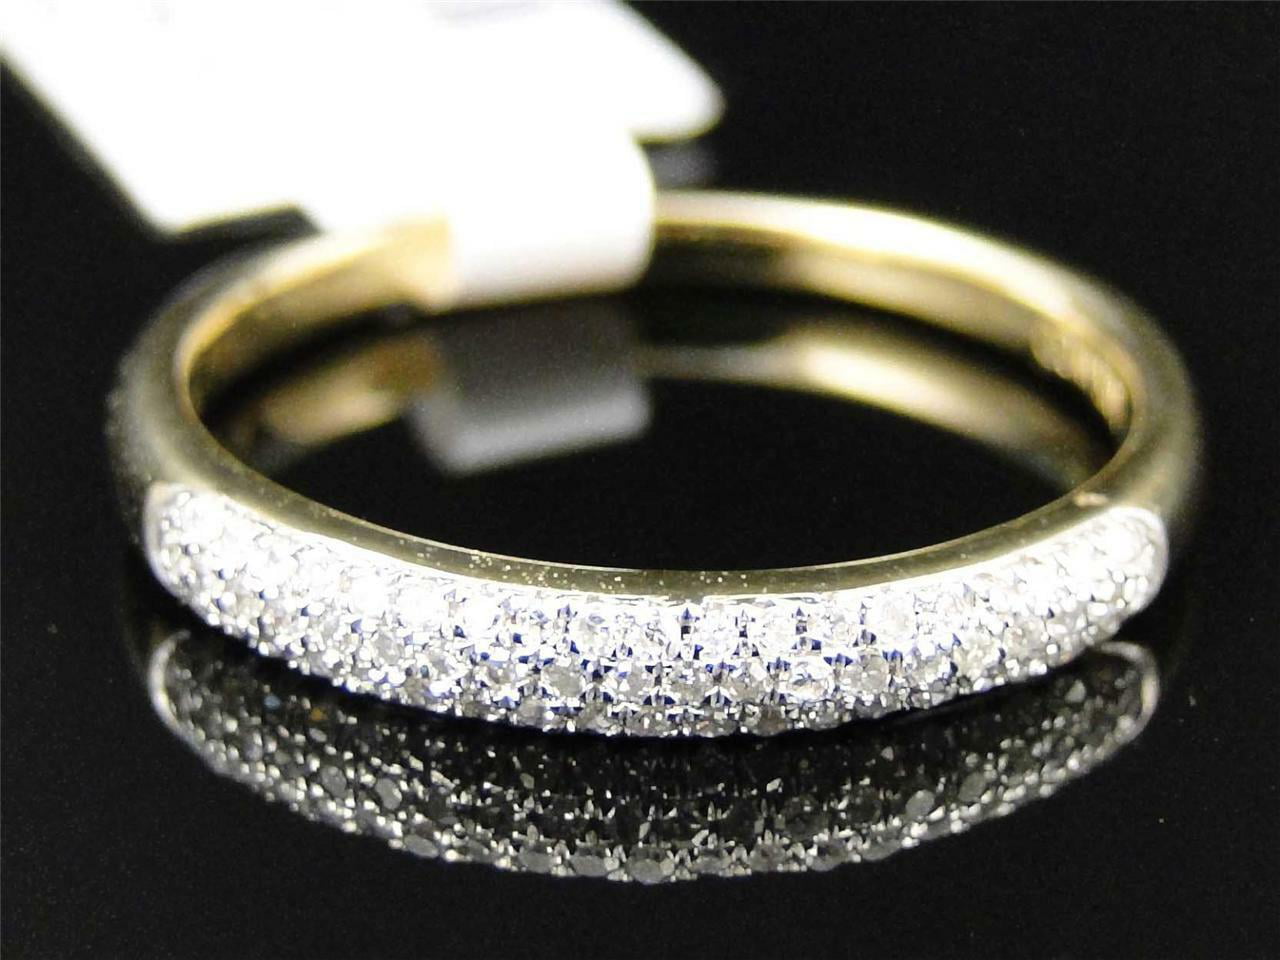 Кольцо с крошкой. Обручальное кольцо 1385603 1 1 1 с бриллиантовой крошкой. Кольцо с алмазной крошкой. Кольцо с бриллиантовой крошкой. Кольцо с алмазным напылением.